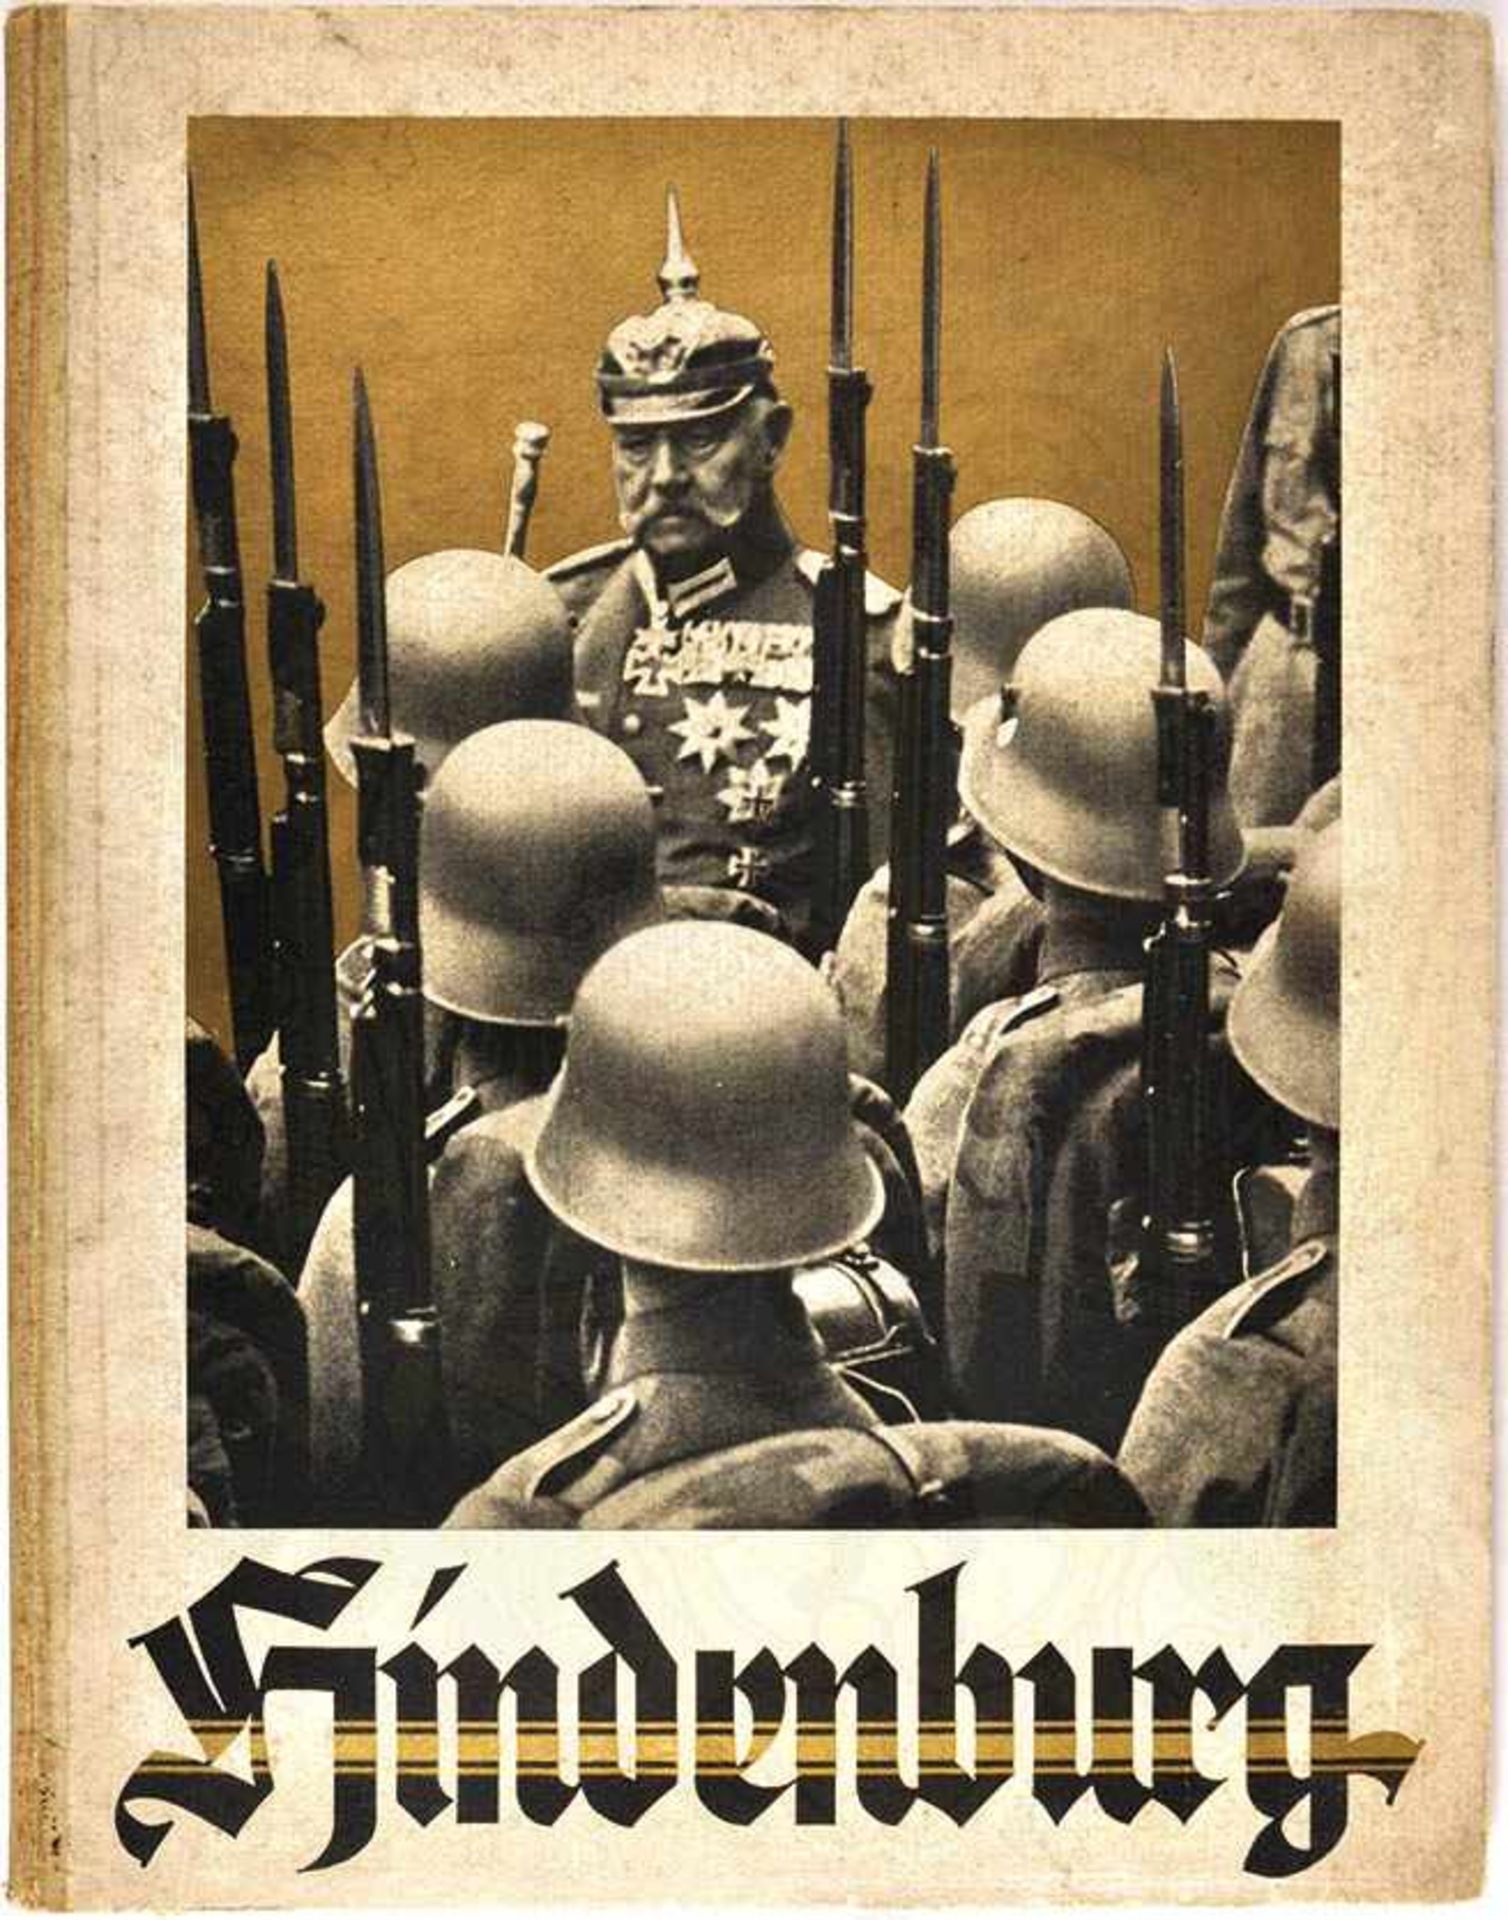 HINDENBURG, Gedenkschrift, Bln. 1935, zahlr. Fotos, 96 S., großf. Hln. m. Titelfoto